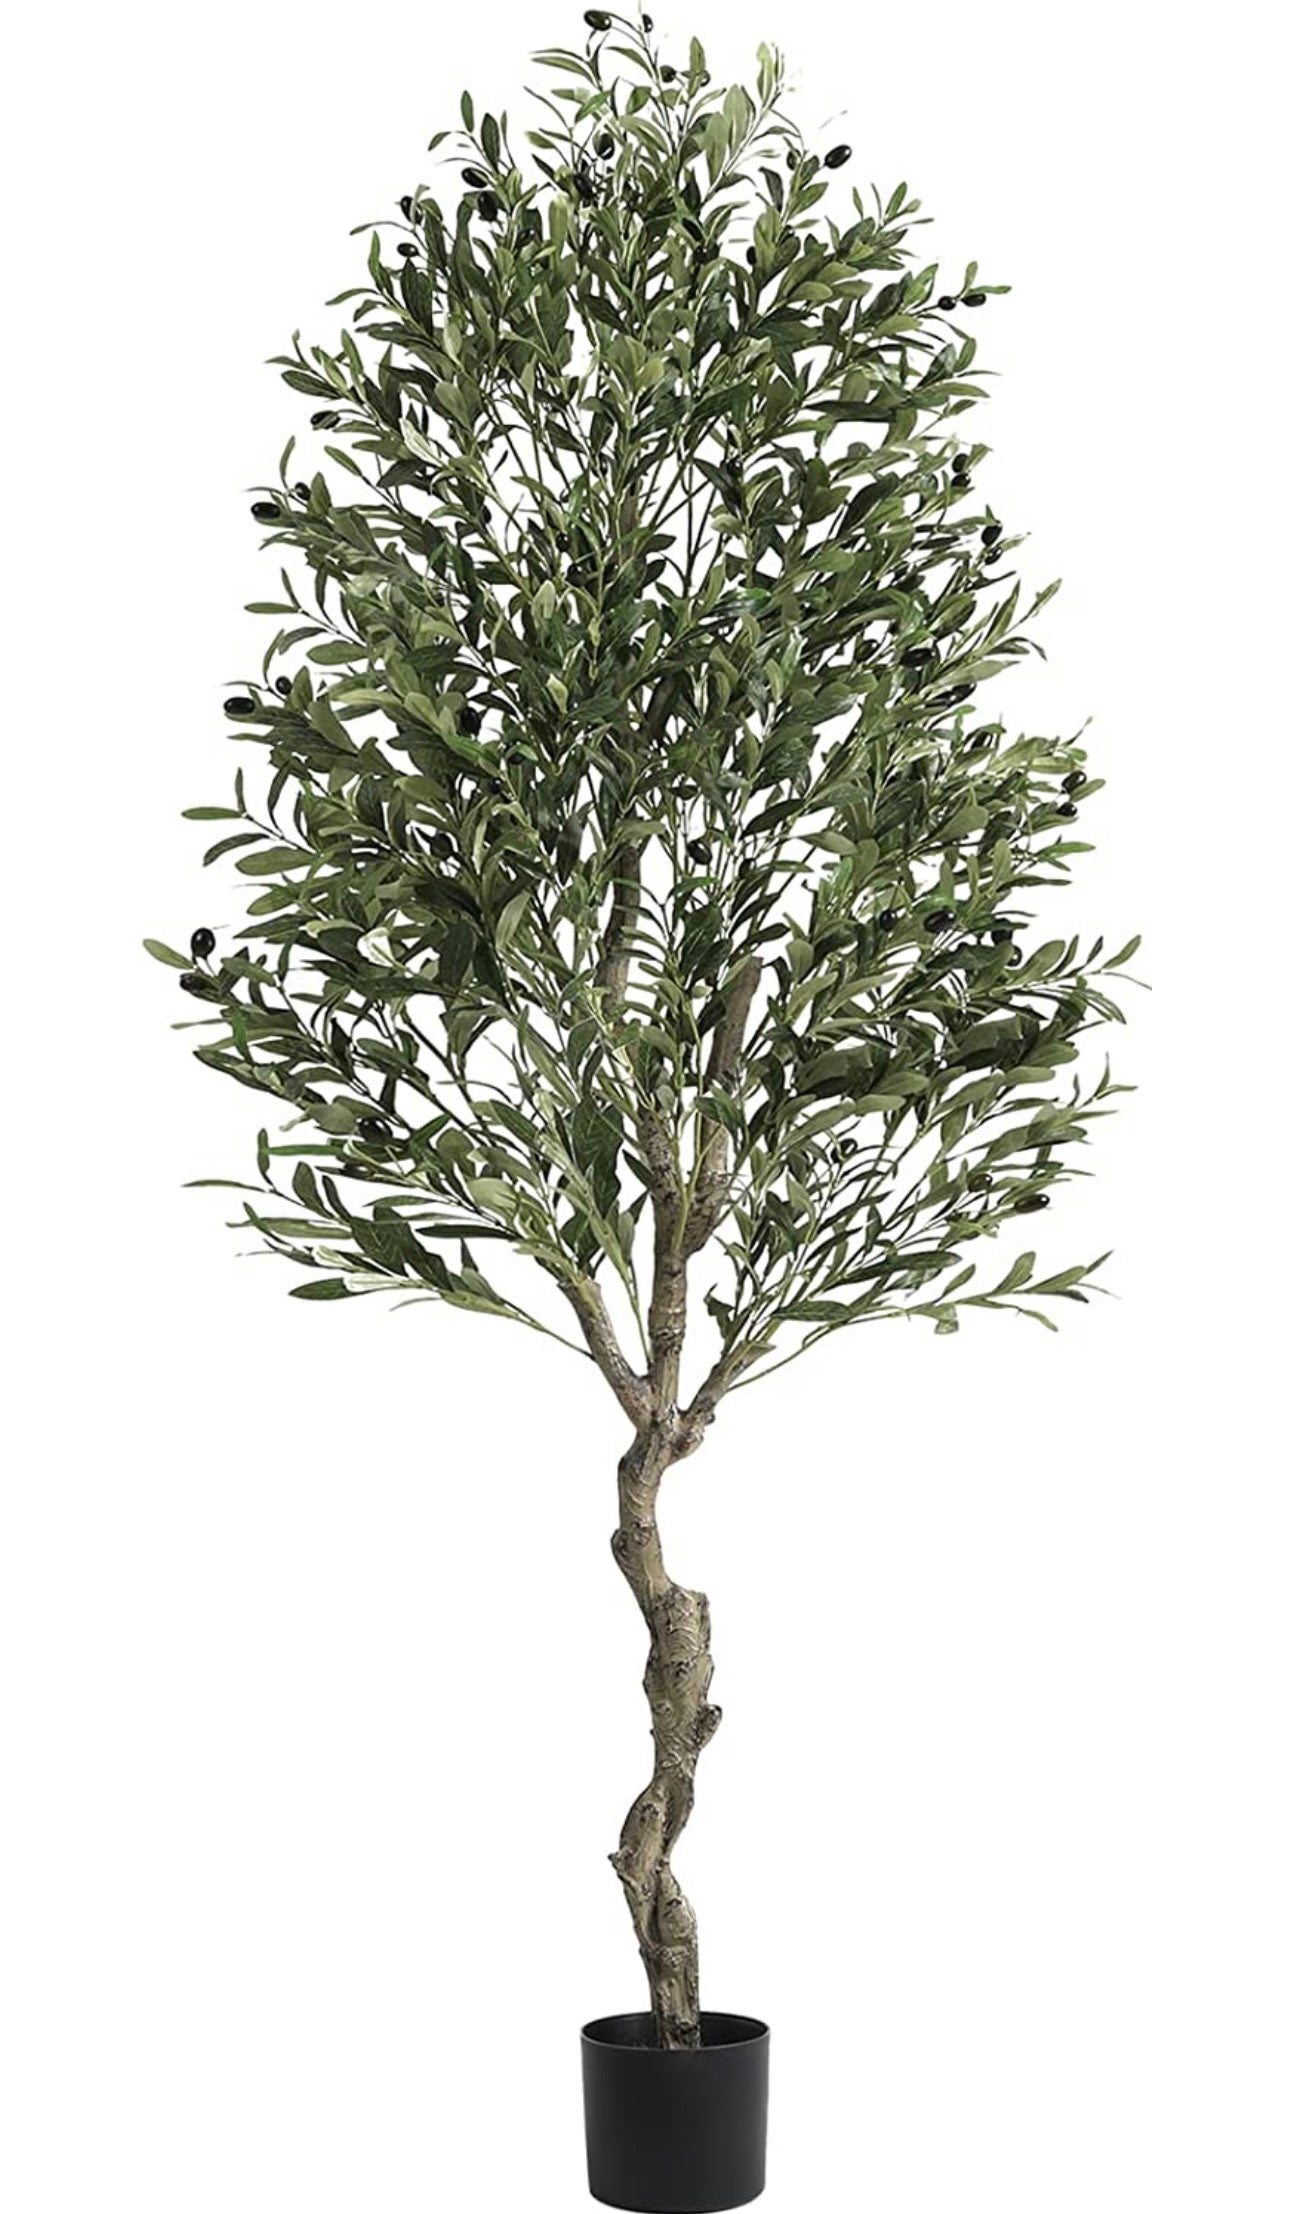 Crosofmi – Olivo artificial en maceta, 5 pies de alto, árbol de